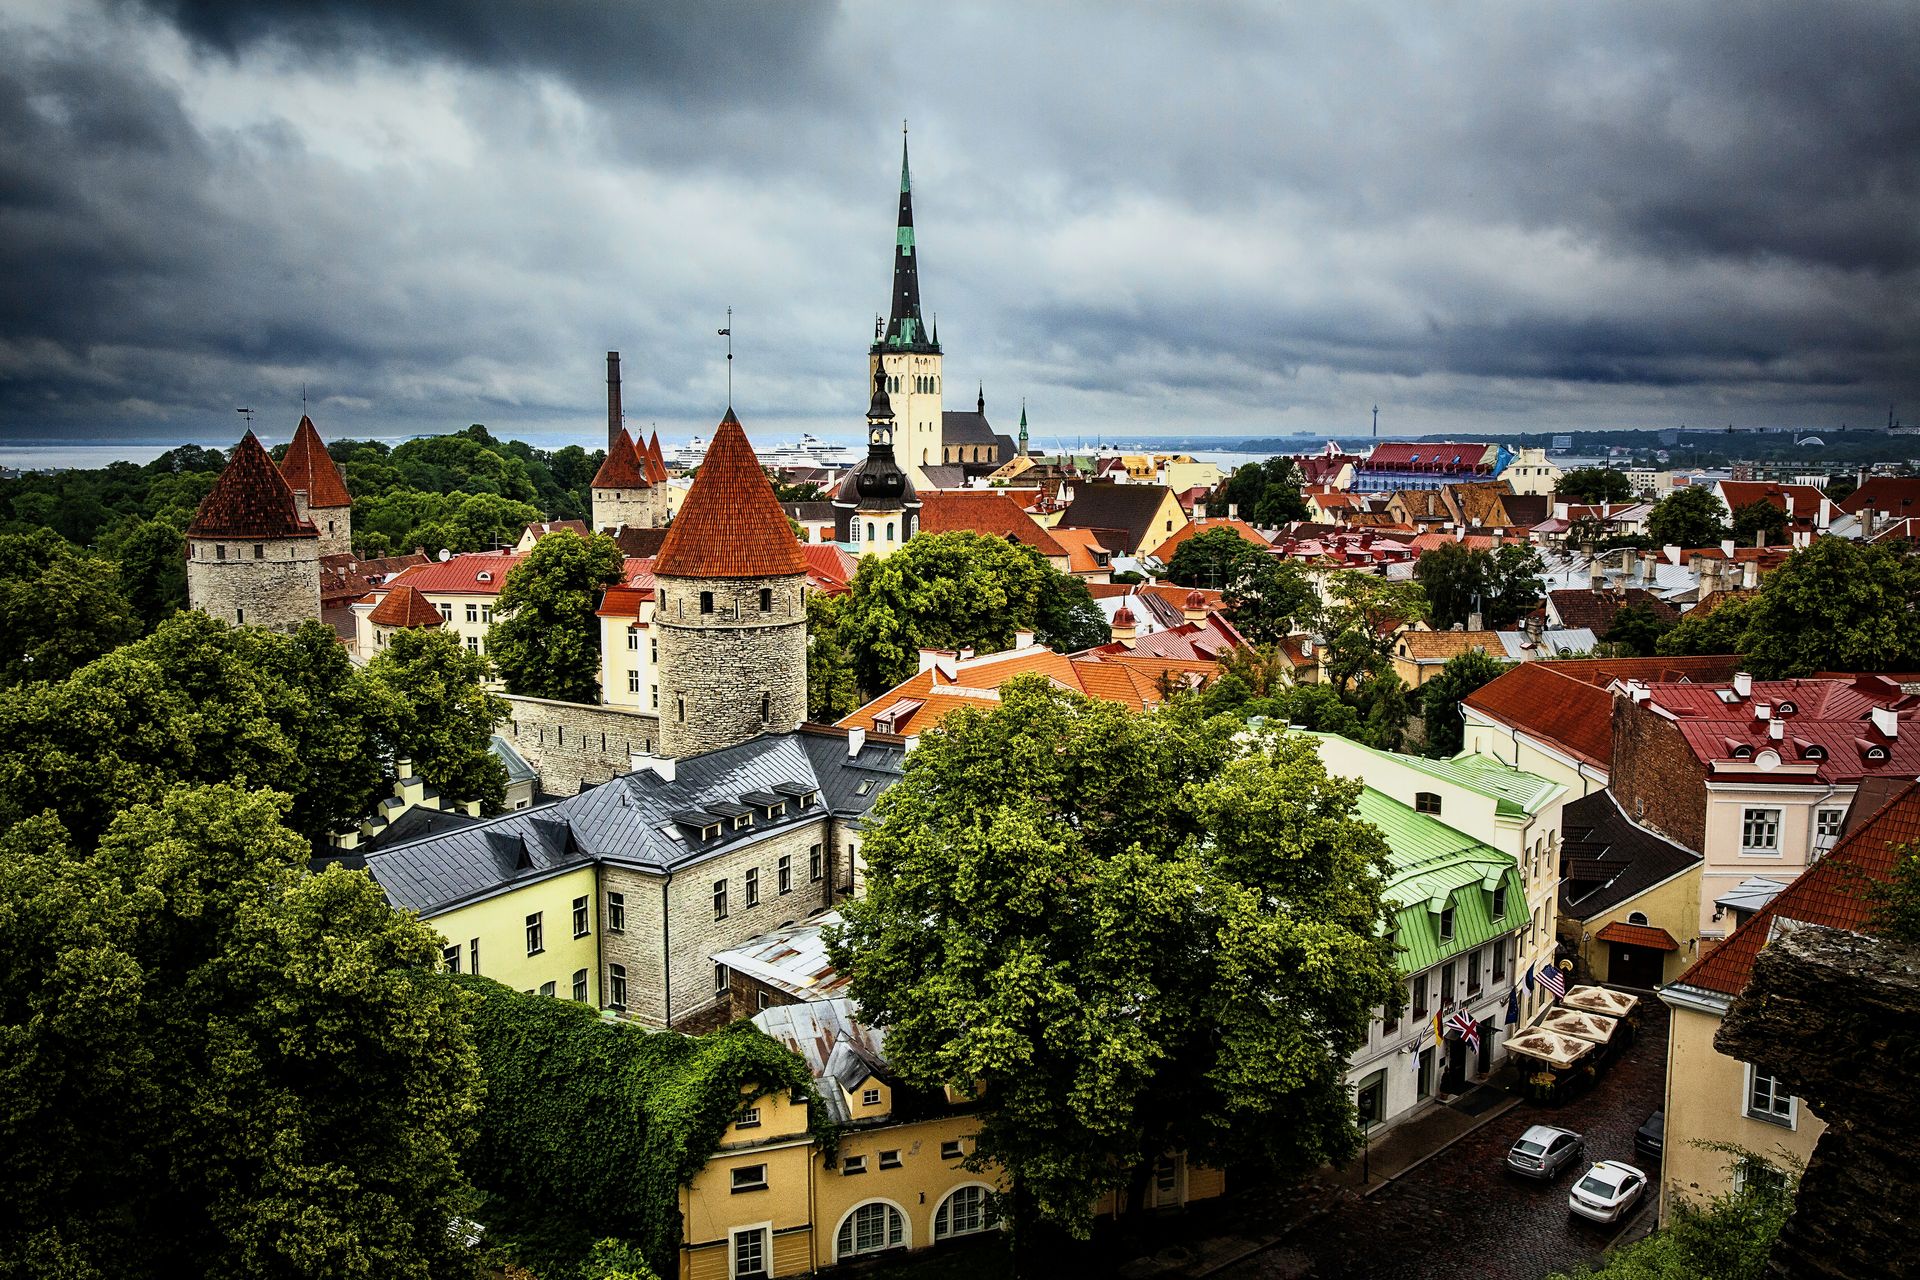 Estonia: 20.5%